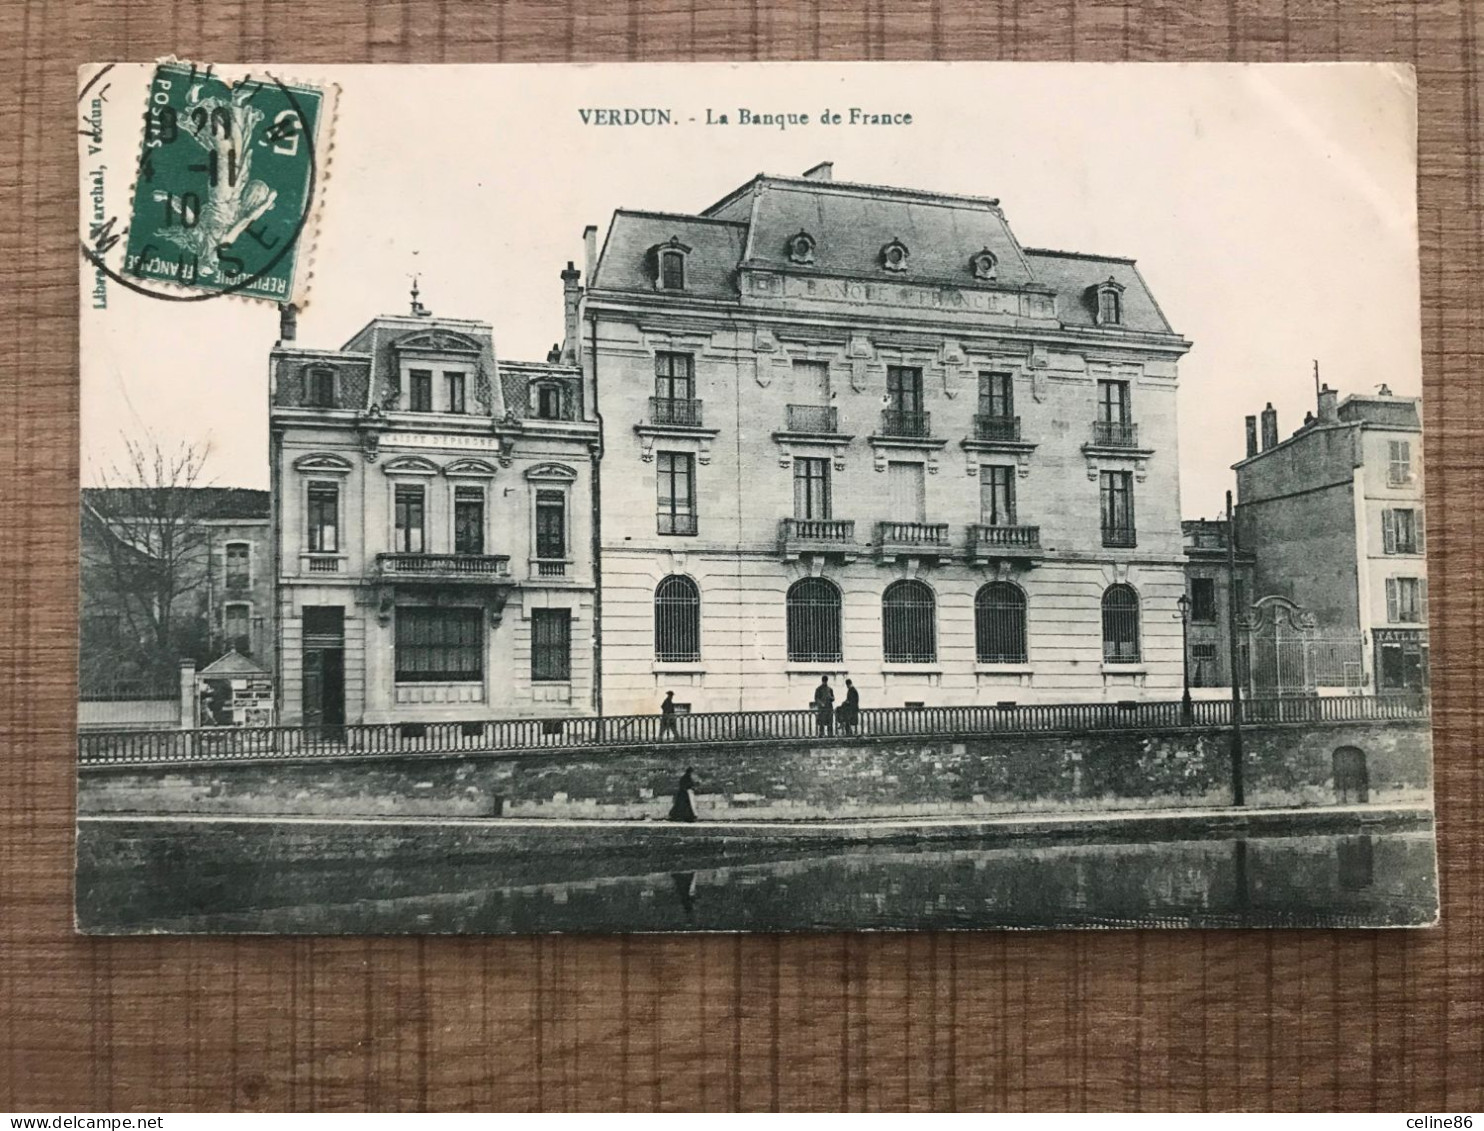  VERDUN La Banque De France  - Verdun